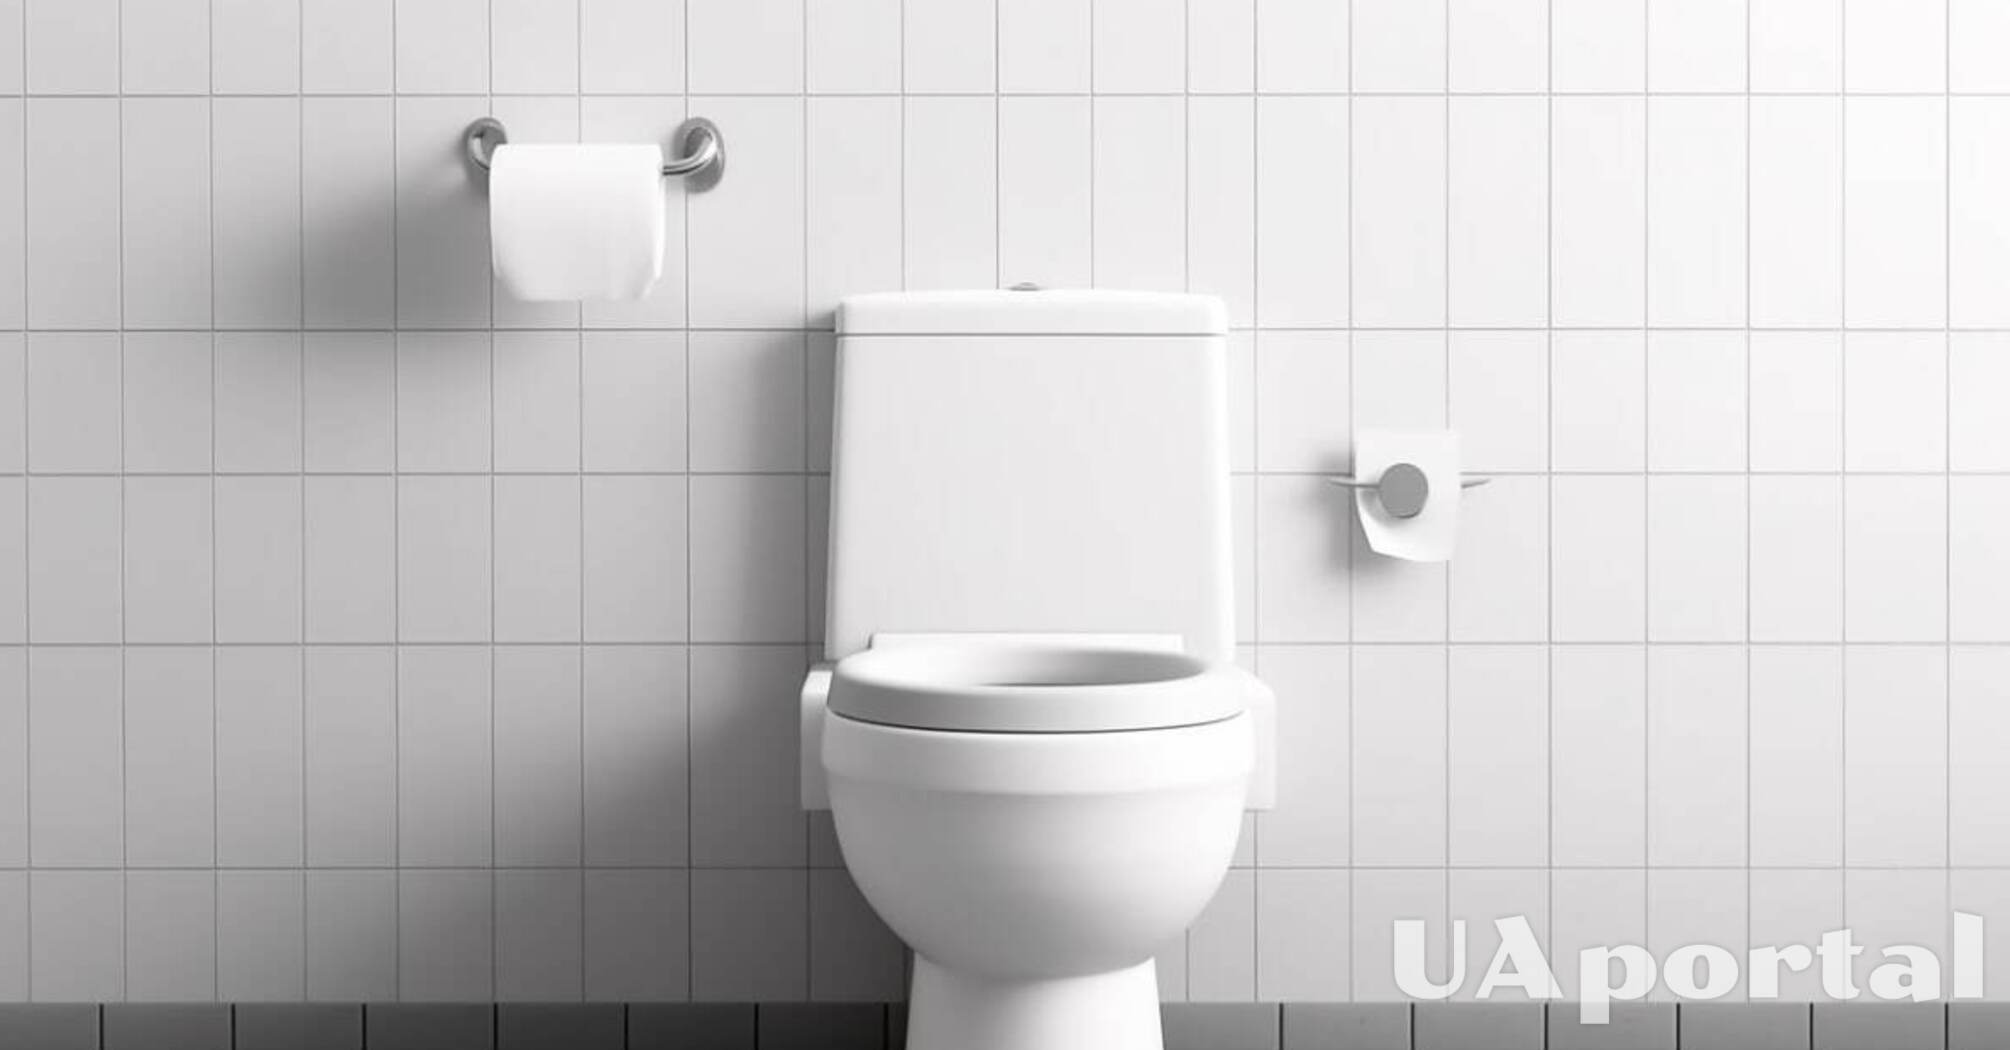 Нужны только спички: эксперты посоветовали самый простой способ избавиться от неприятного запаха в туалете